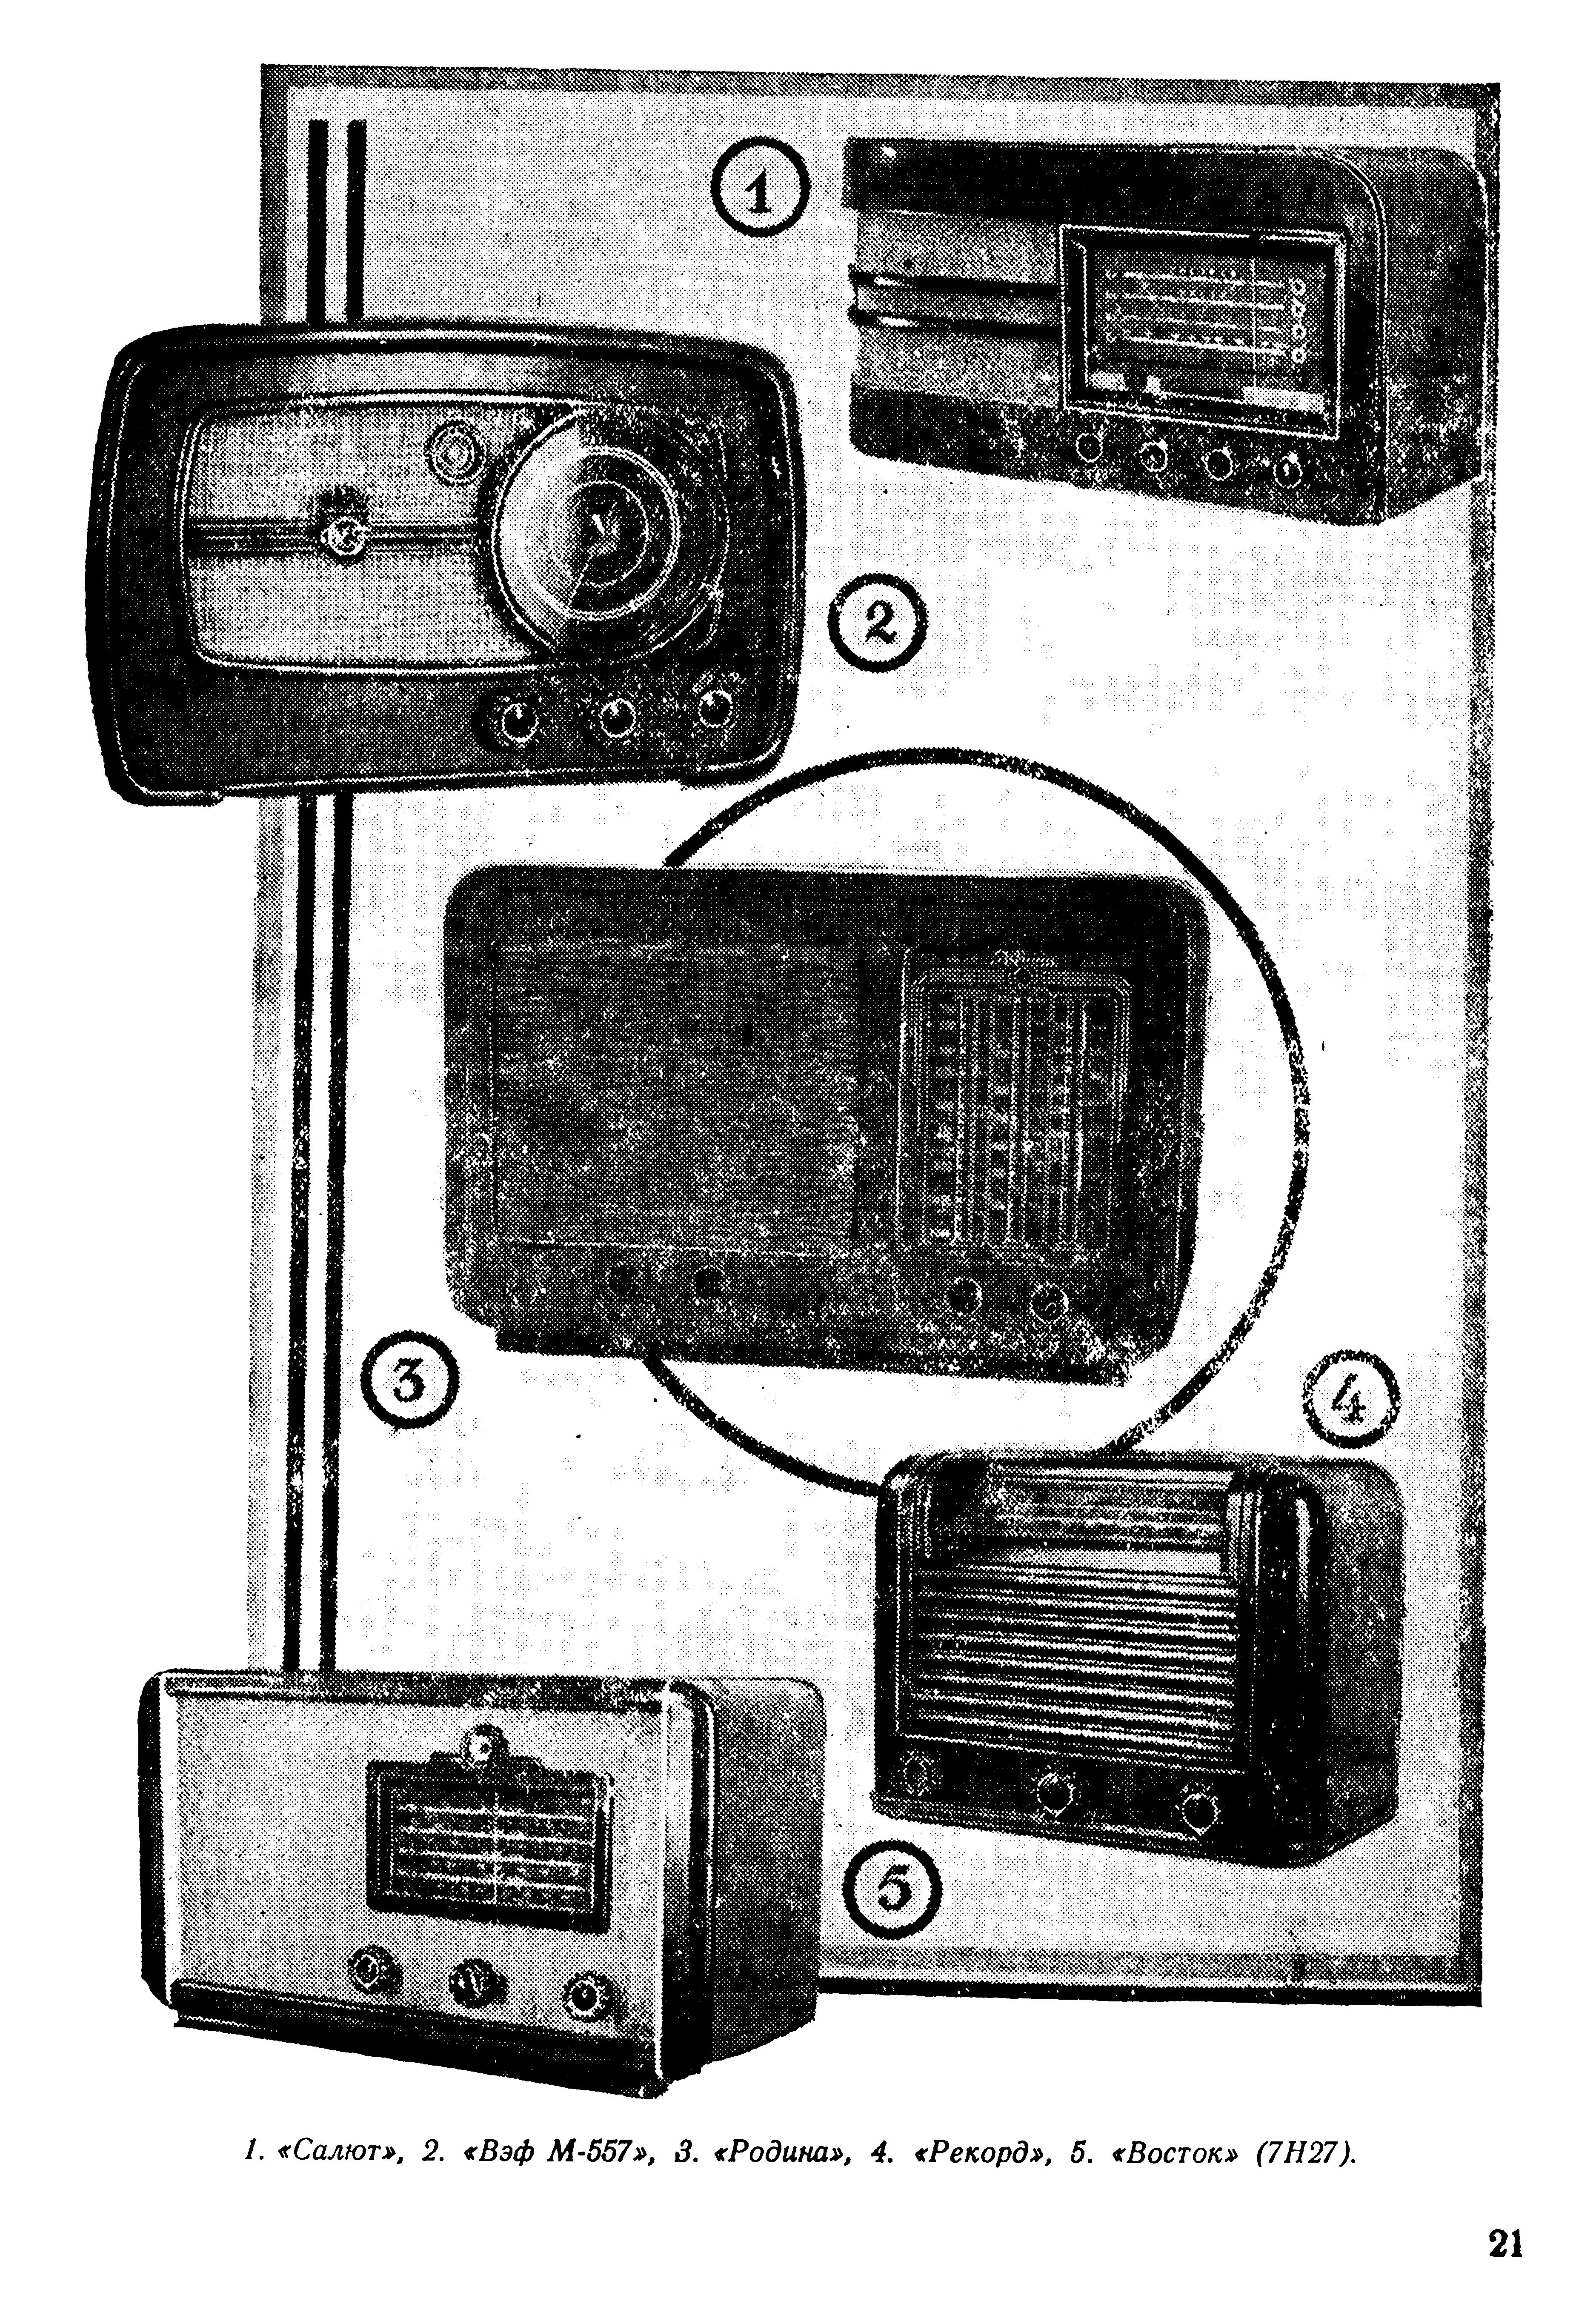 ЧТО ДАСТ наша радиопромышленнонсть в 1946 г.